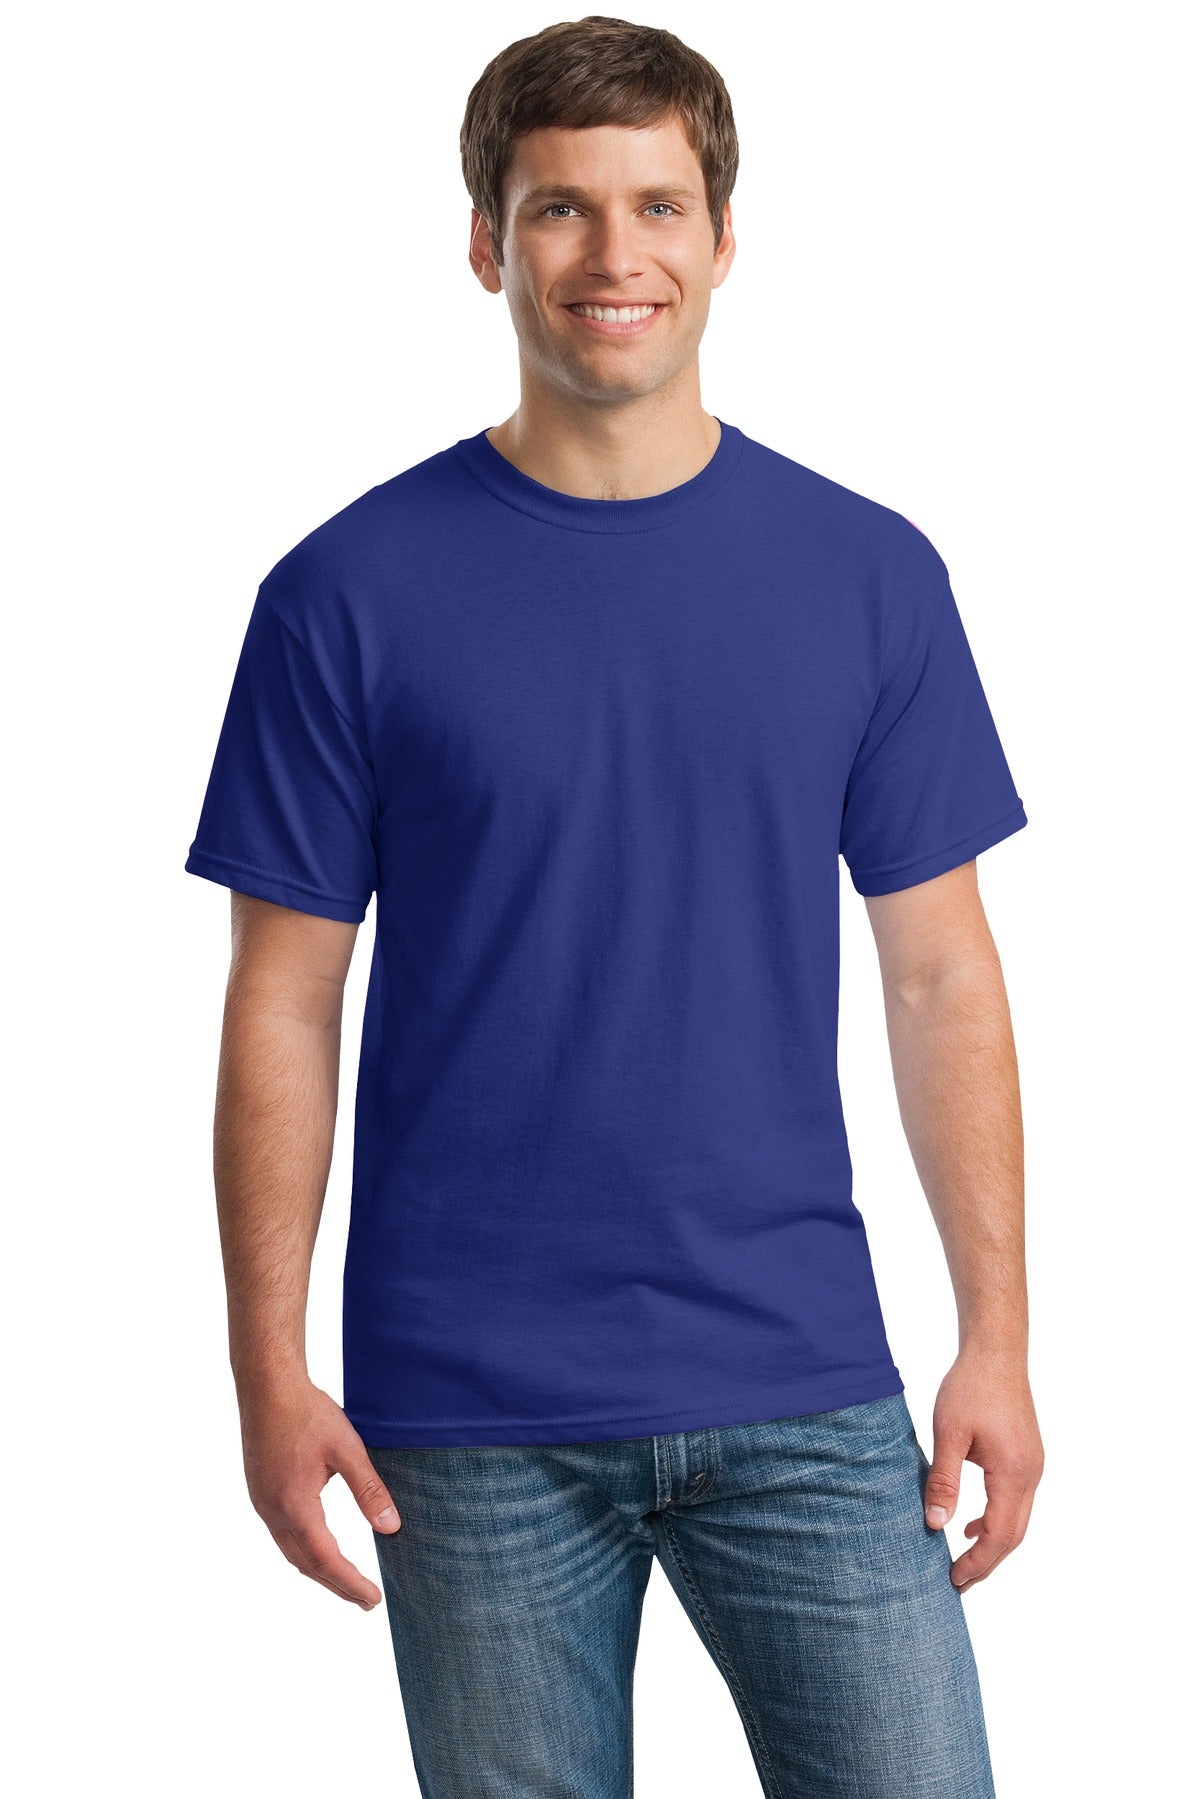 Gildan® - Heavy Cotton™ 100% Cotton T-Shirt. 5000 [Cobalt] - DFW Impression